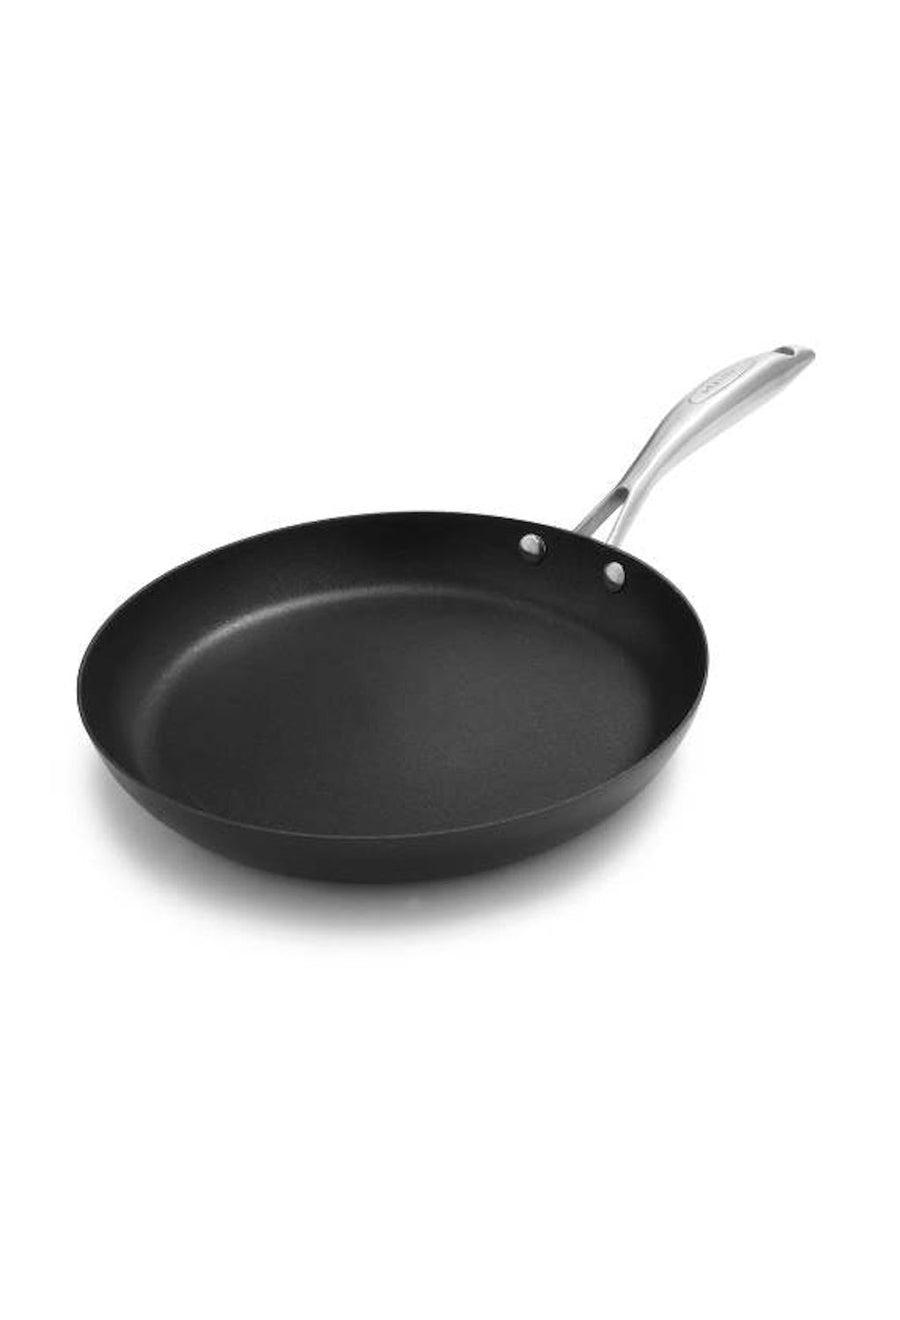 Scanpan Pro IQ Fry Pan